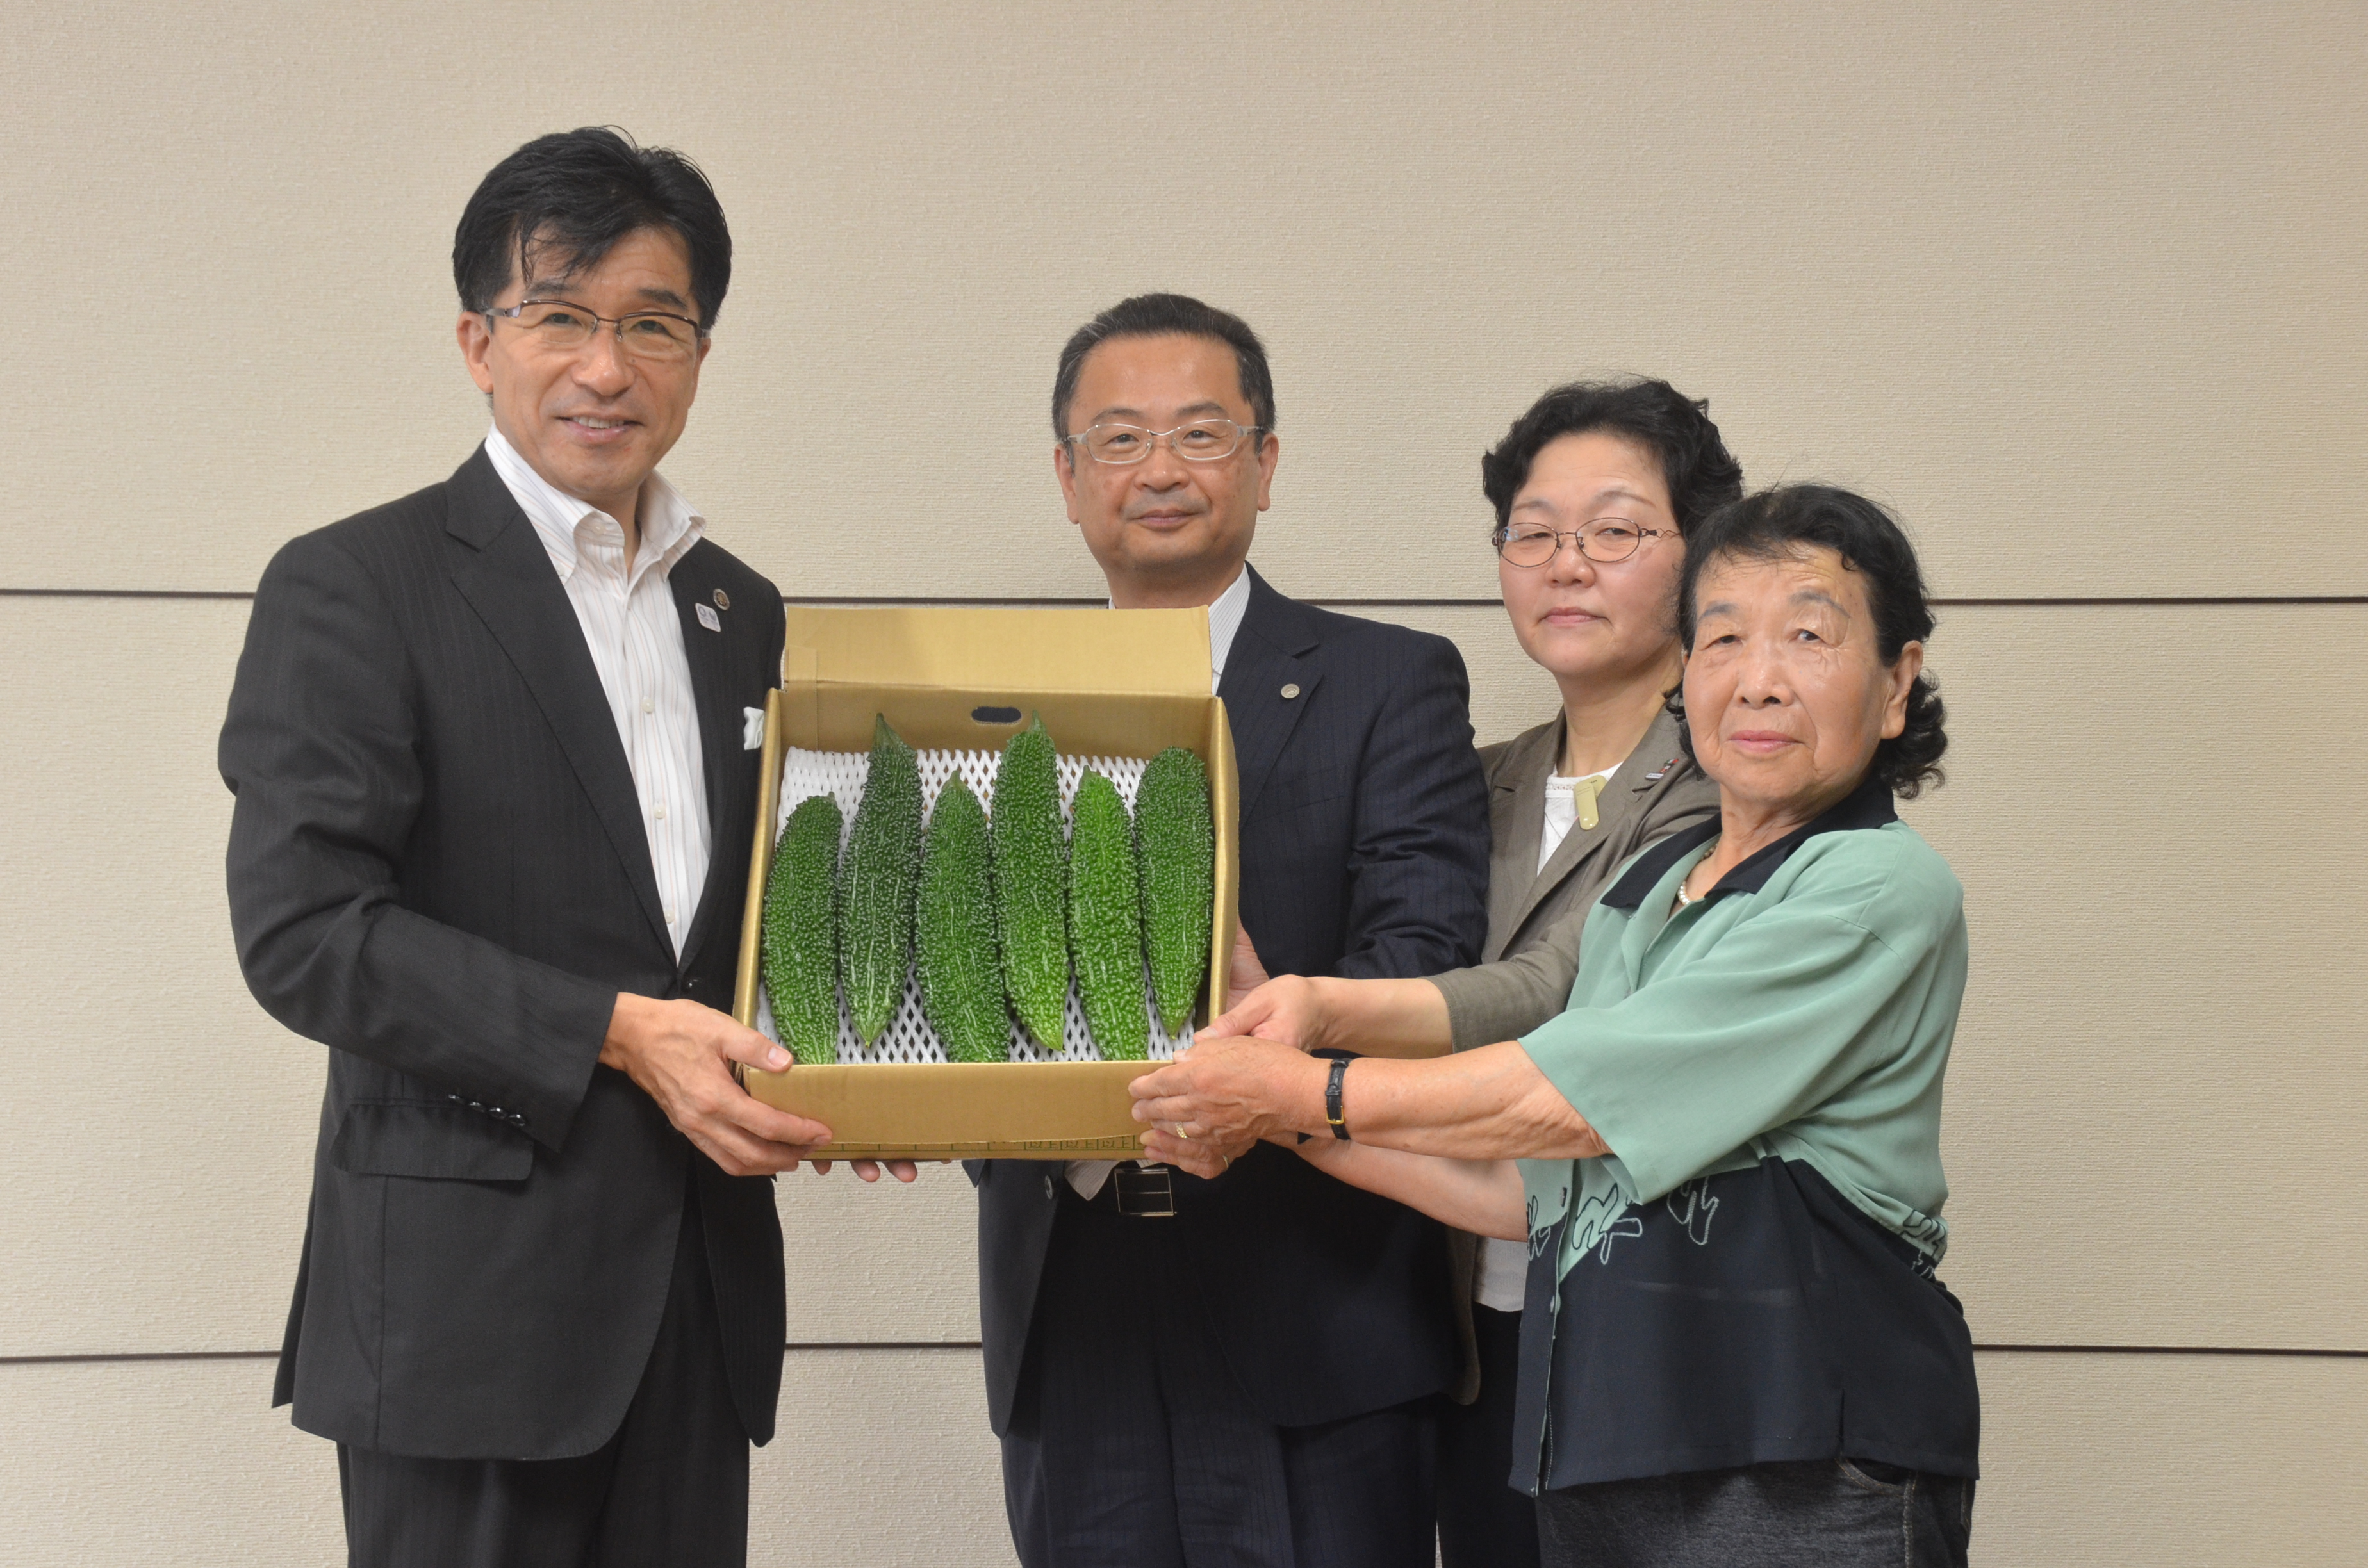 市長にニガウリを贈呈するJAふくしま未来福島地区そさい専門部会ニガウリ班の皆さま